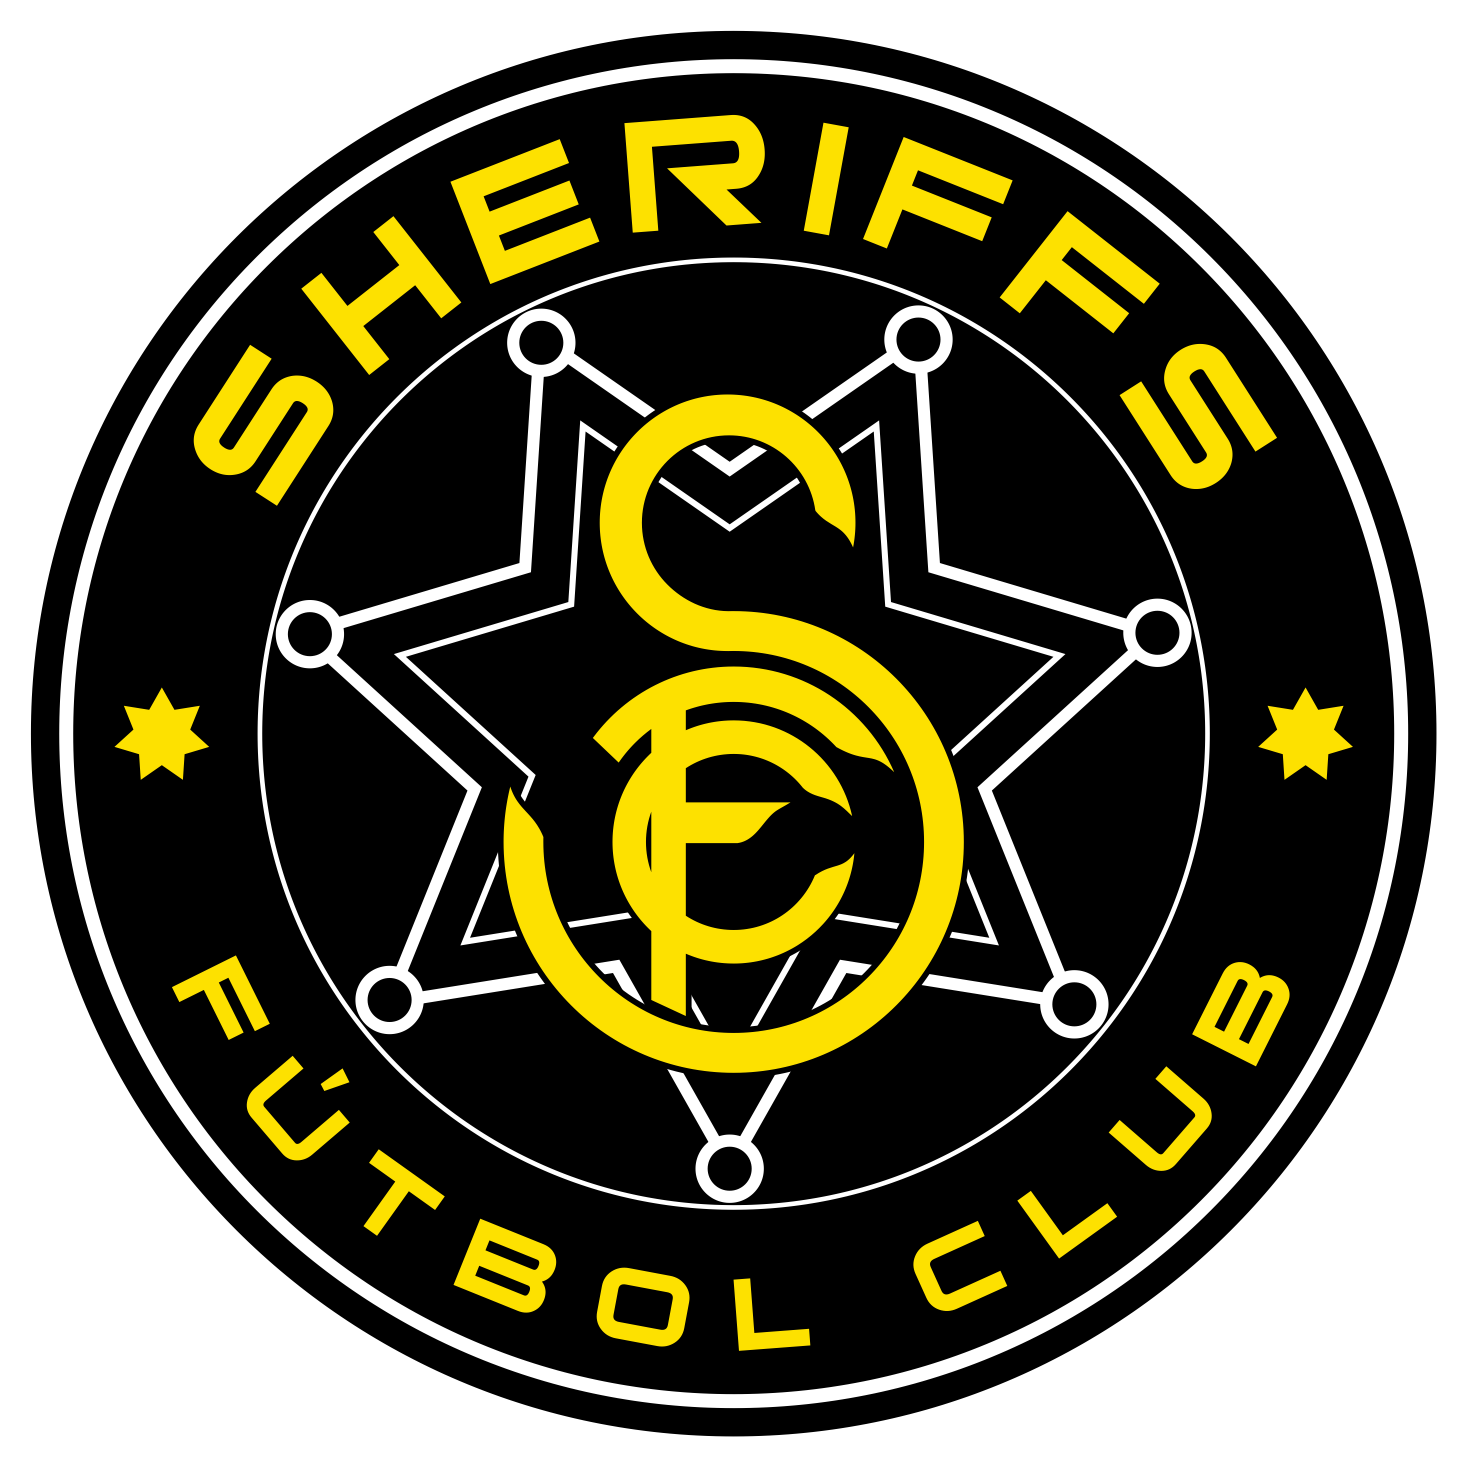 Sheriffs Futbol Club team badge